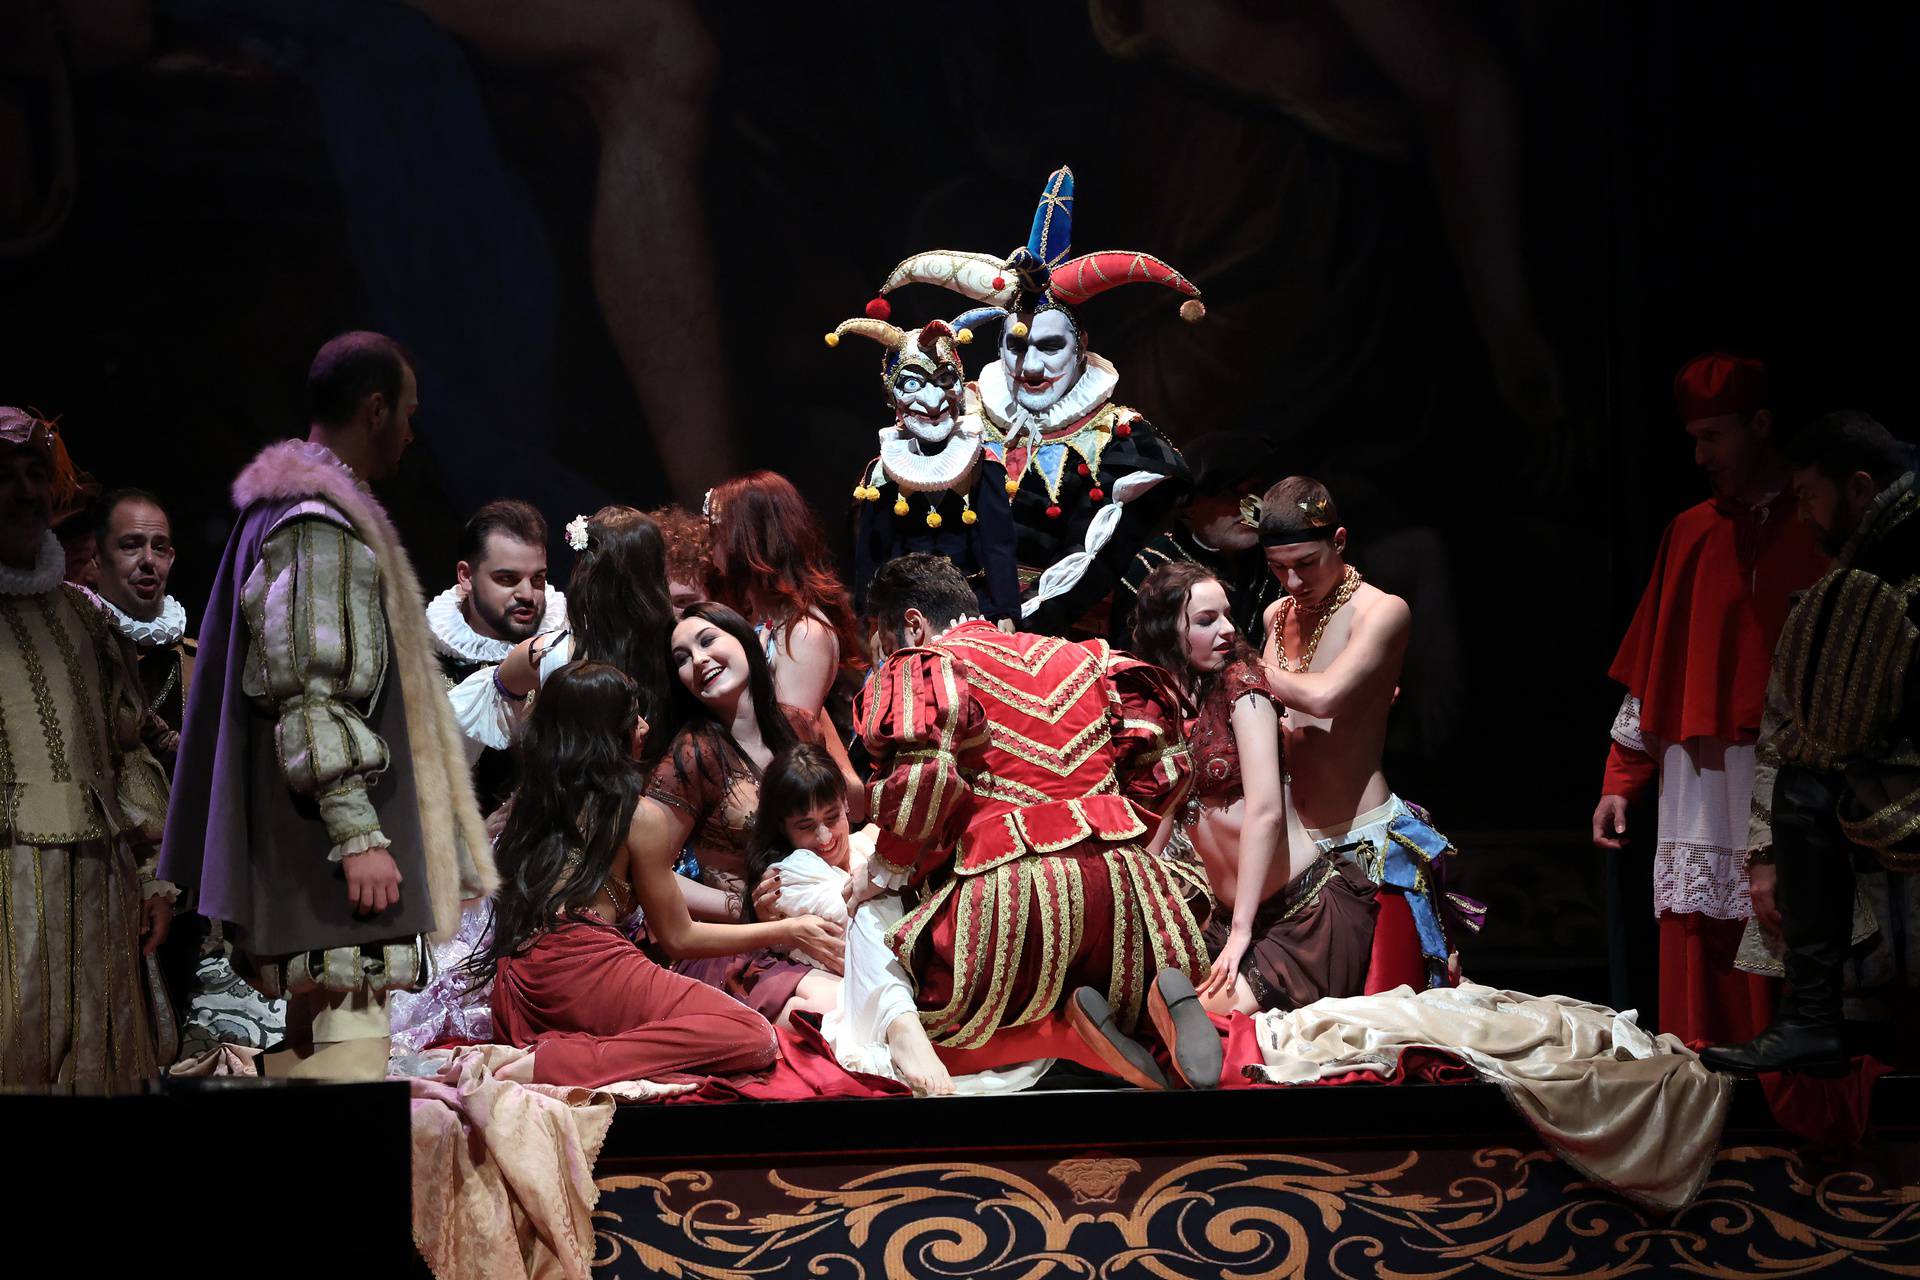 Zagreb: Generalna proba operne premijere "Rigoletto" Giuseppea Verdija povodom  Svjetskiog dana opere 